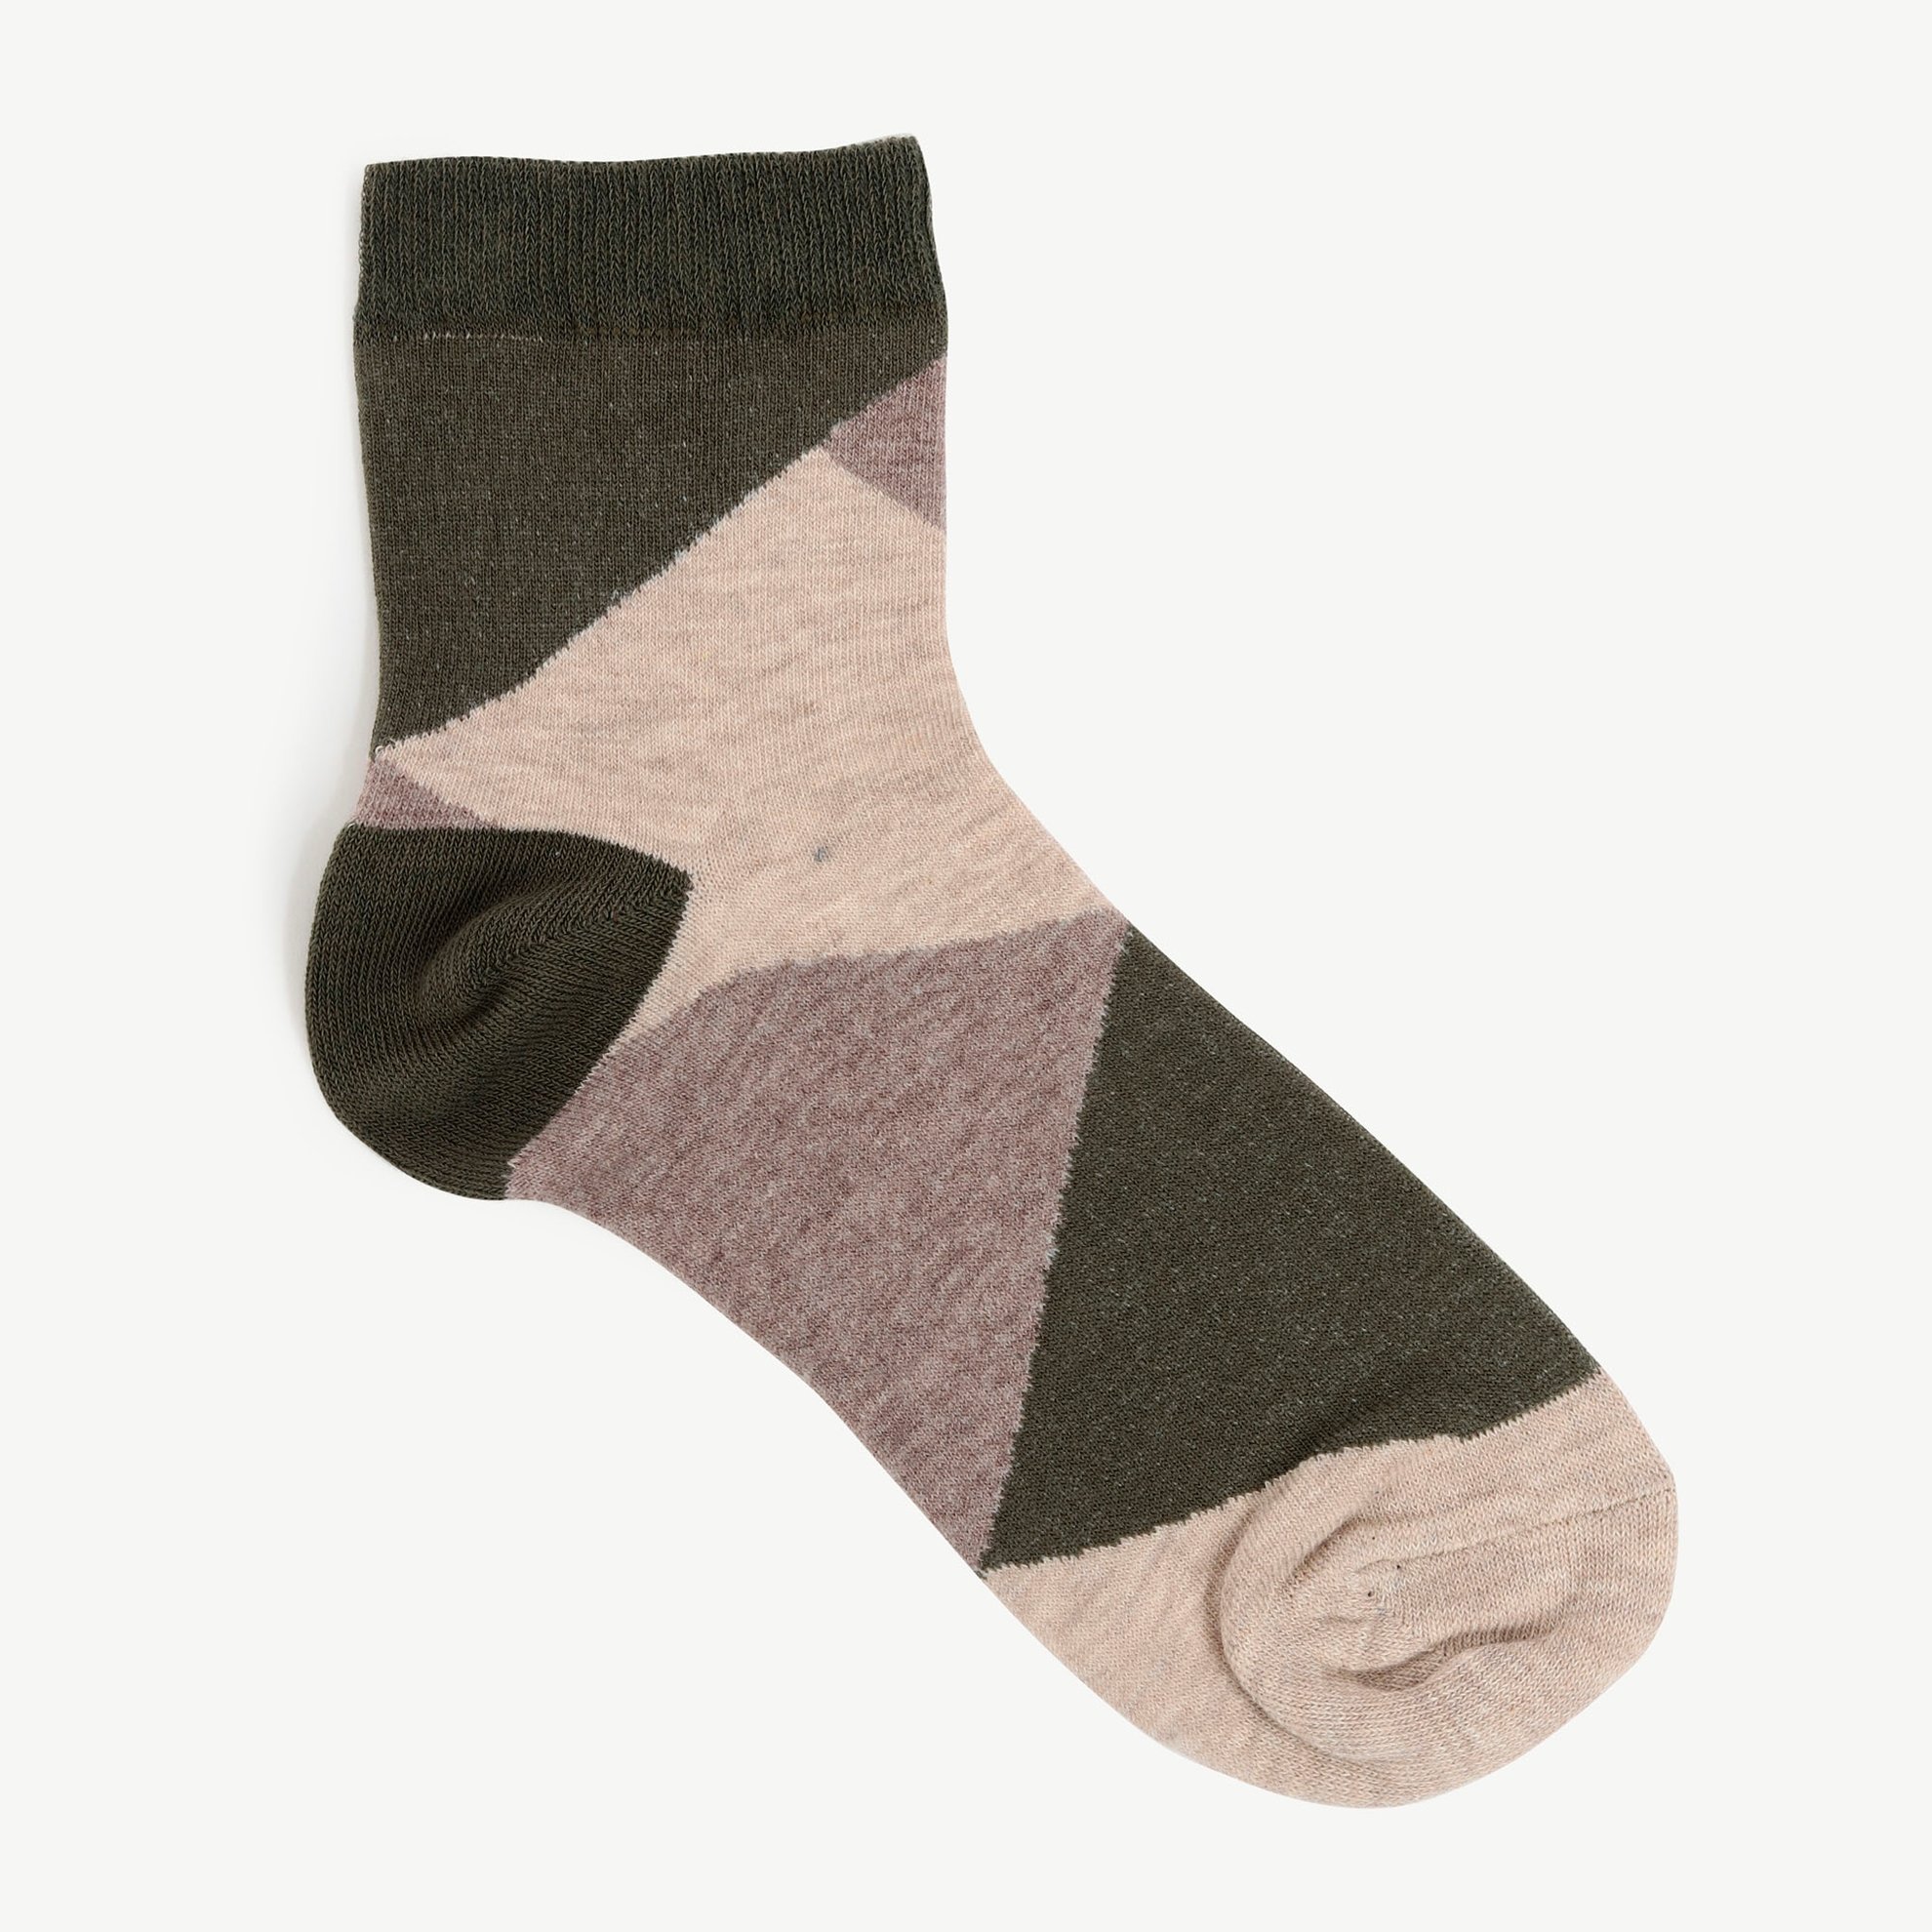 Renk Bloklu Çorap